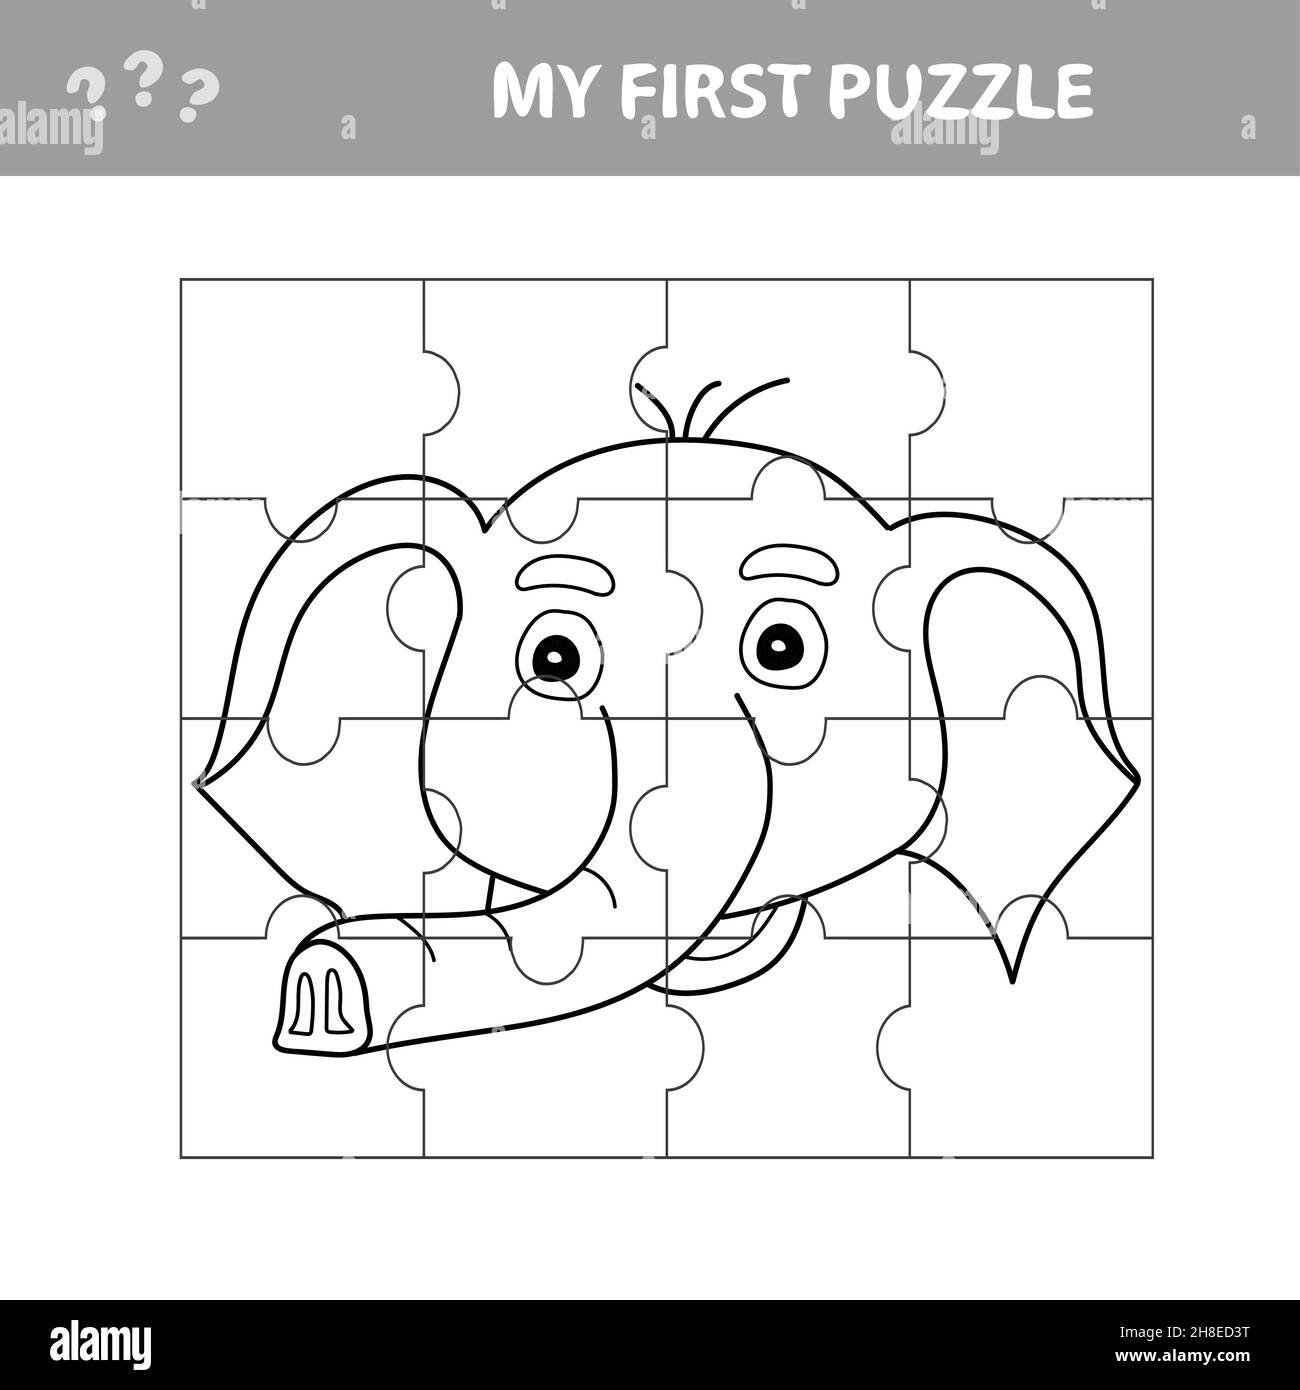 Ilustración de juego de rompecabezas para niños con lindo elefante